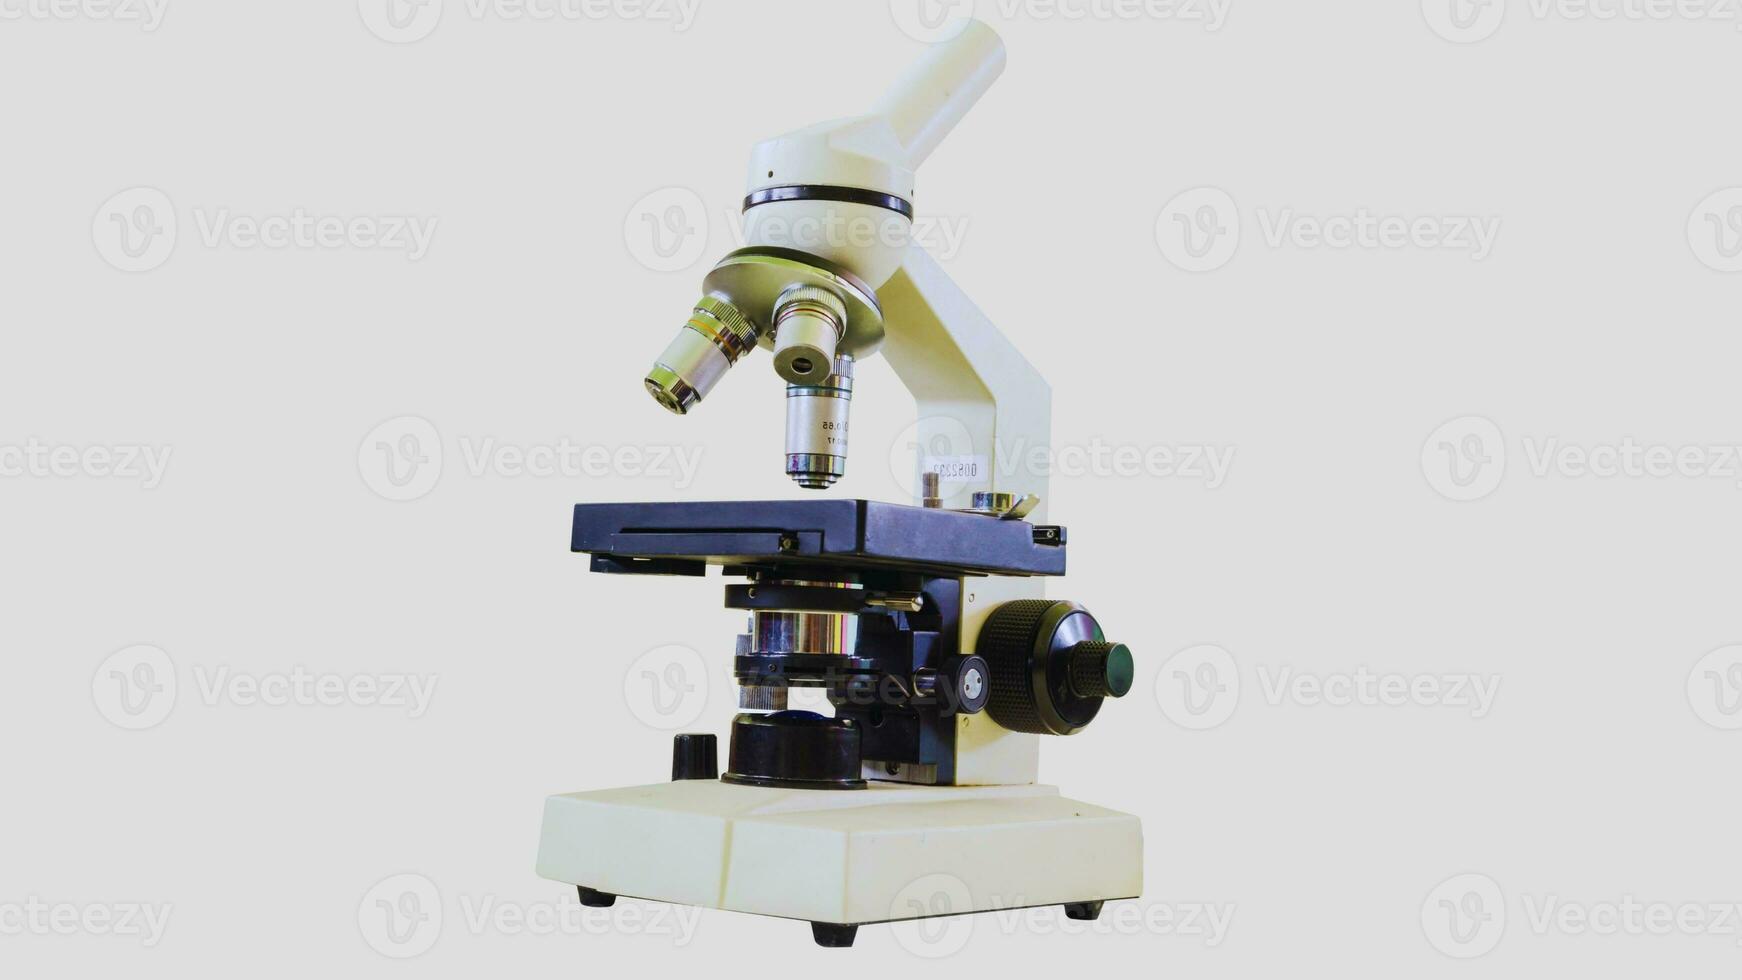 geïsoleerd microscoop Aan wit achtergrond foto